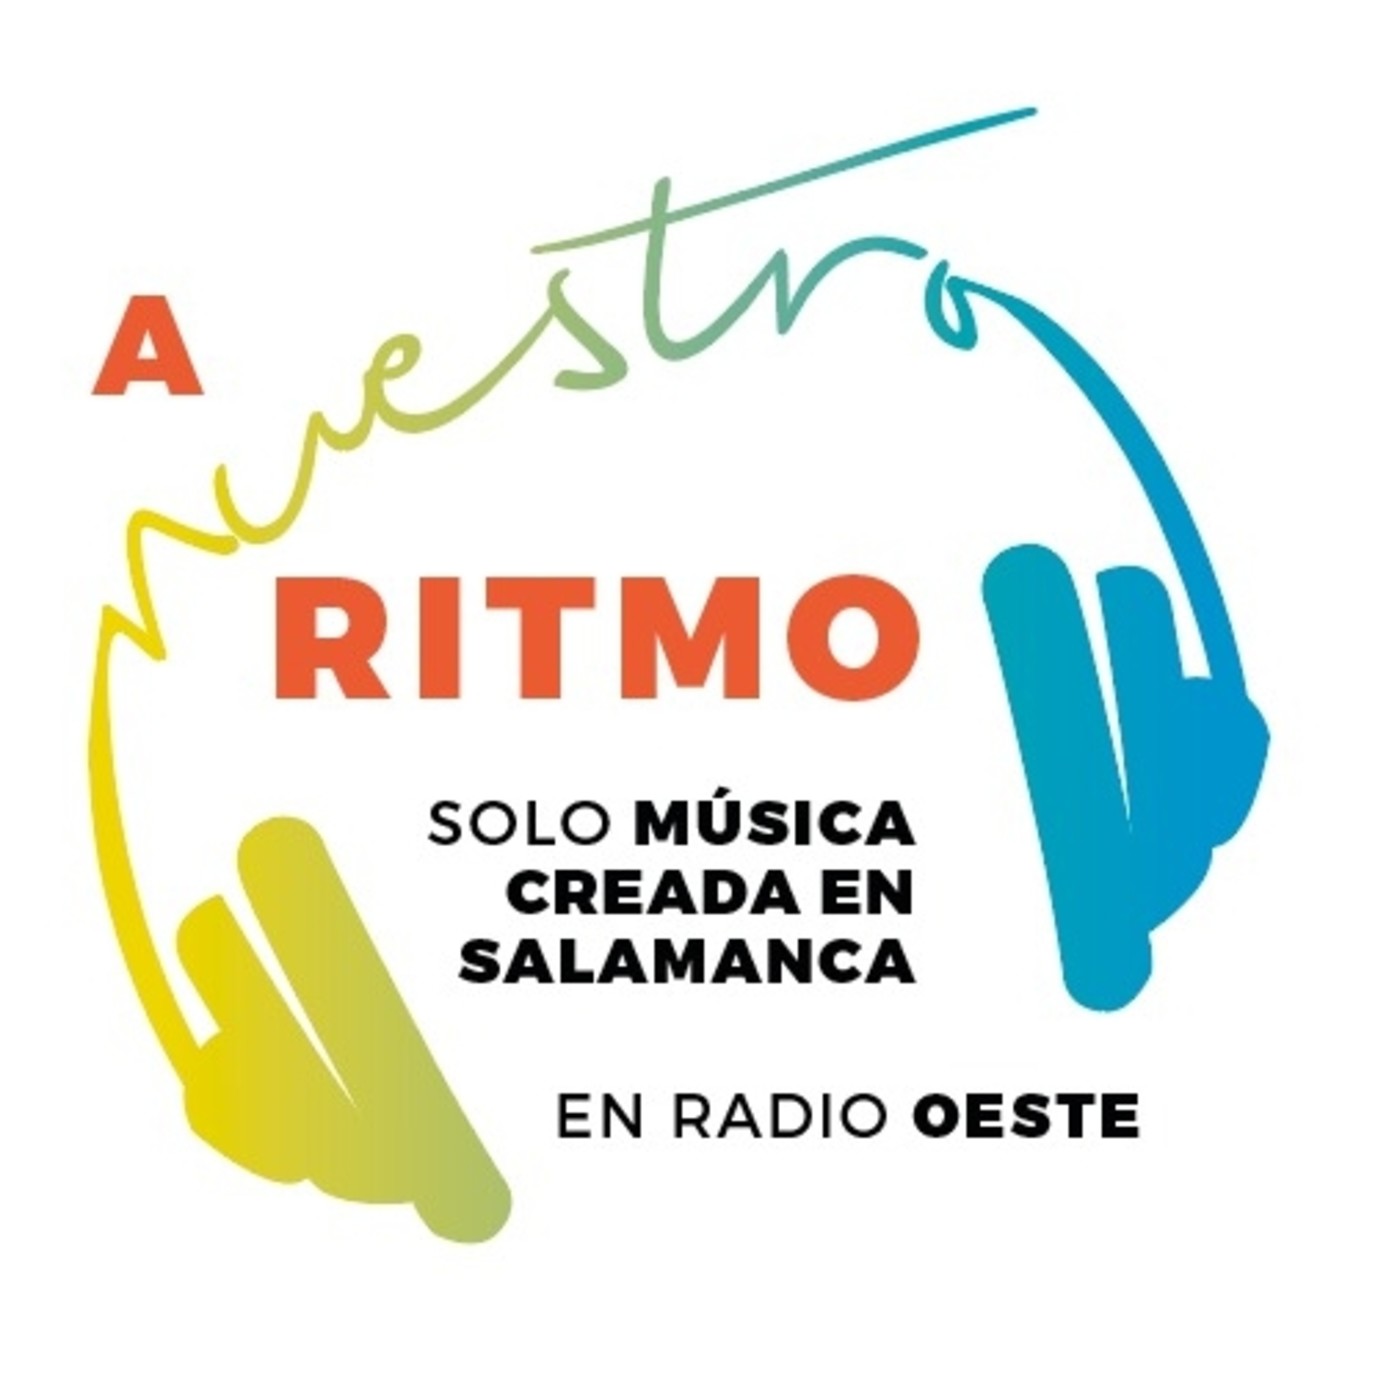 A Nuestro Ritmo 18 Jorge García (Radio Oasis) entrevista